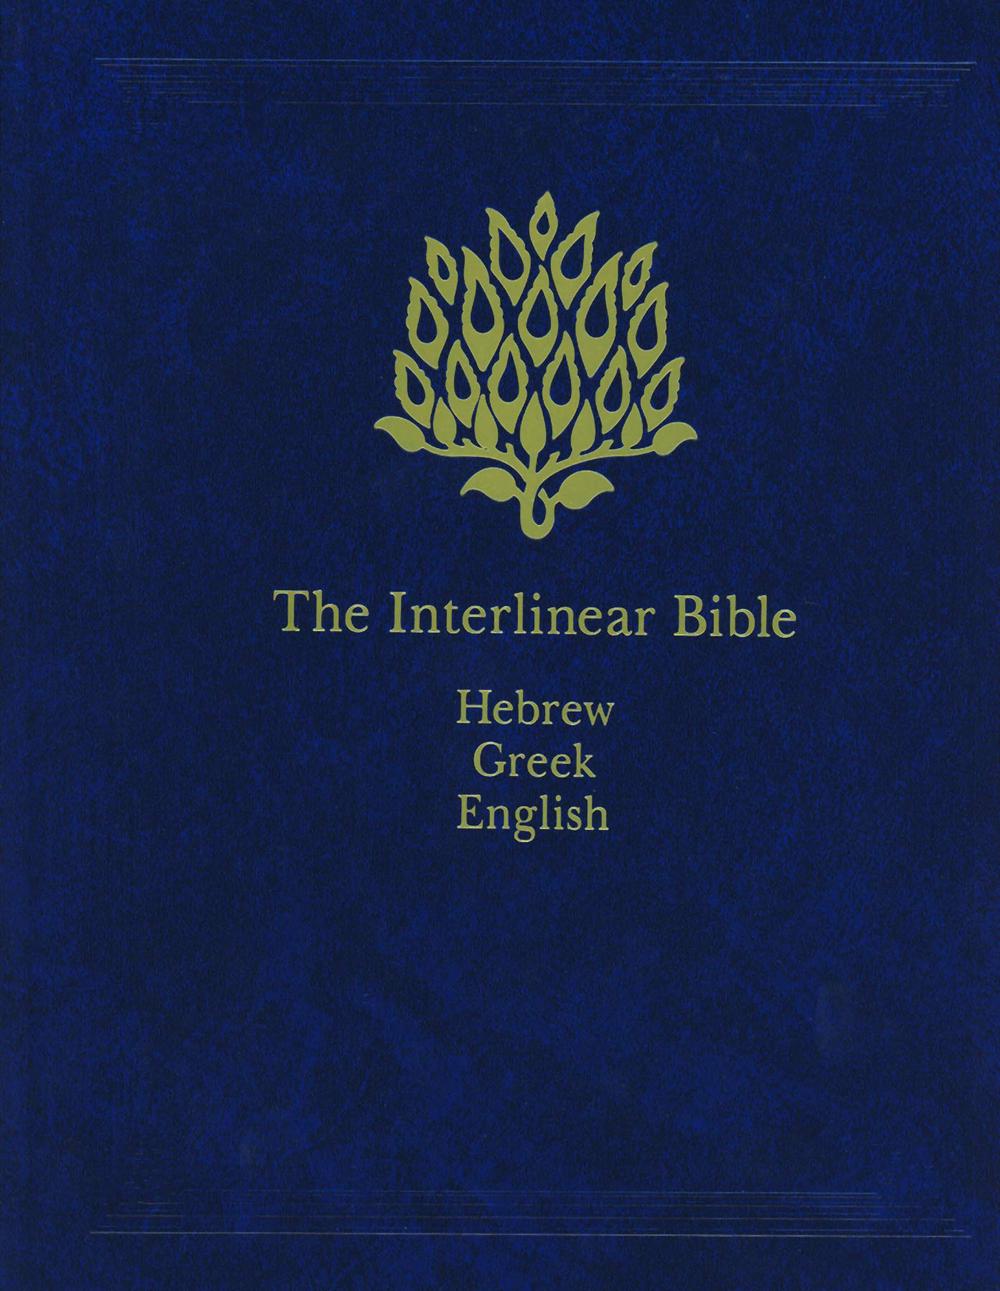 purchase greek interlinear bible